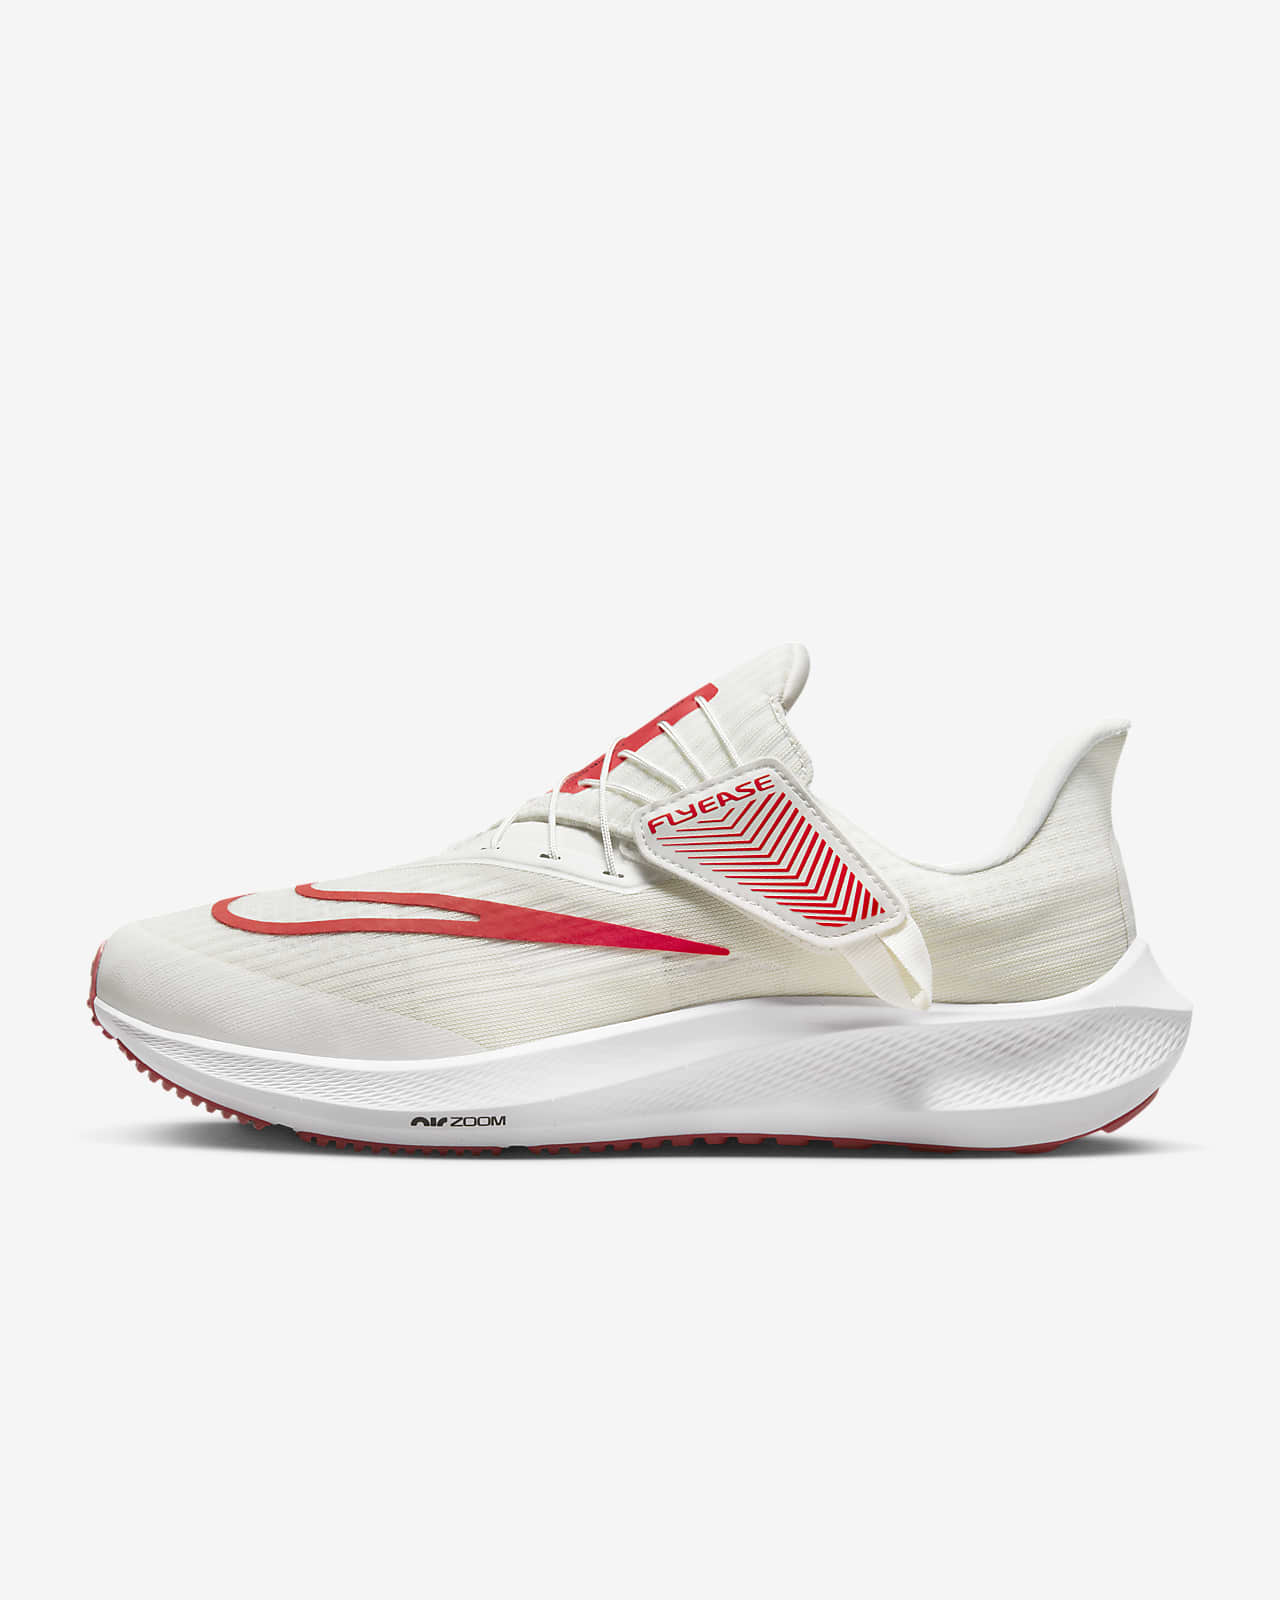 Ανδρικά παπούτσια για τρέξιμο σε δρόμο με εύκολη εφαρμογή/αφαίρεση Nike Pegasus FlyEase